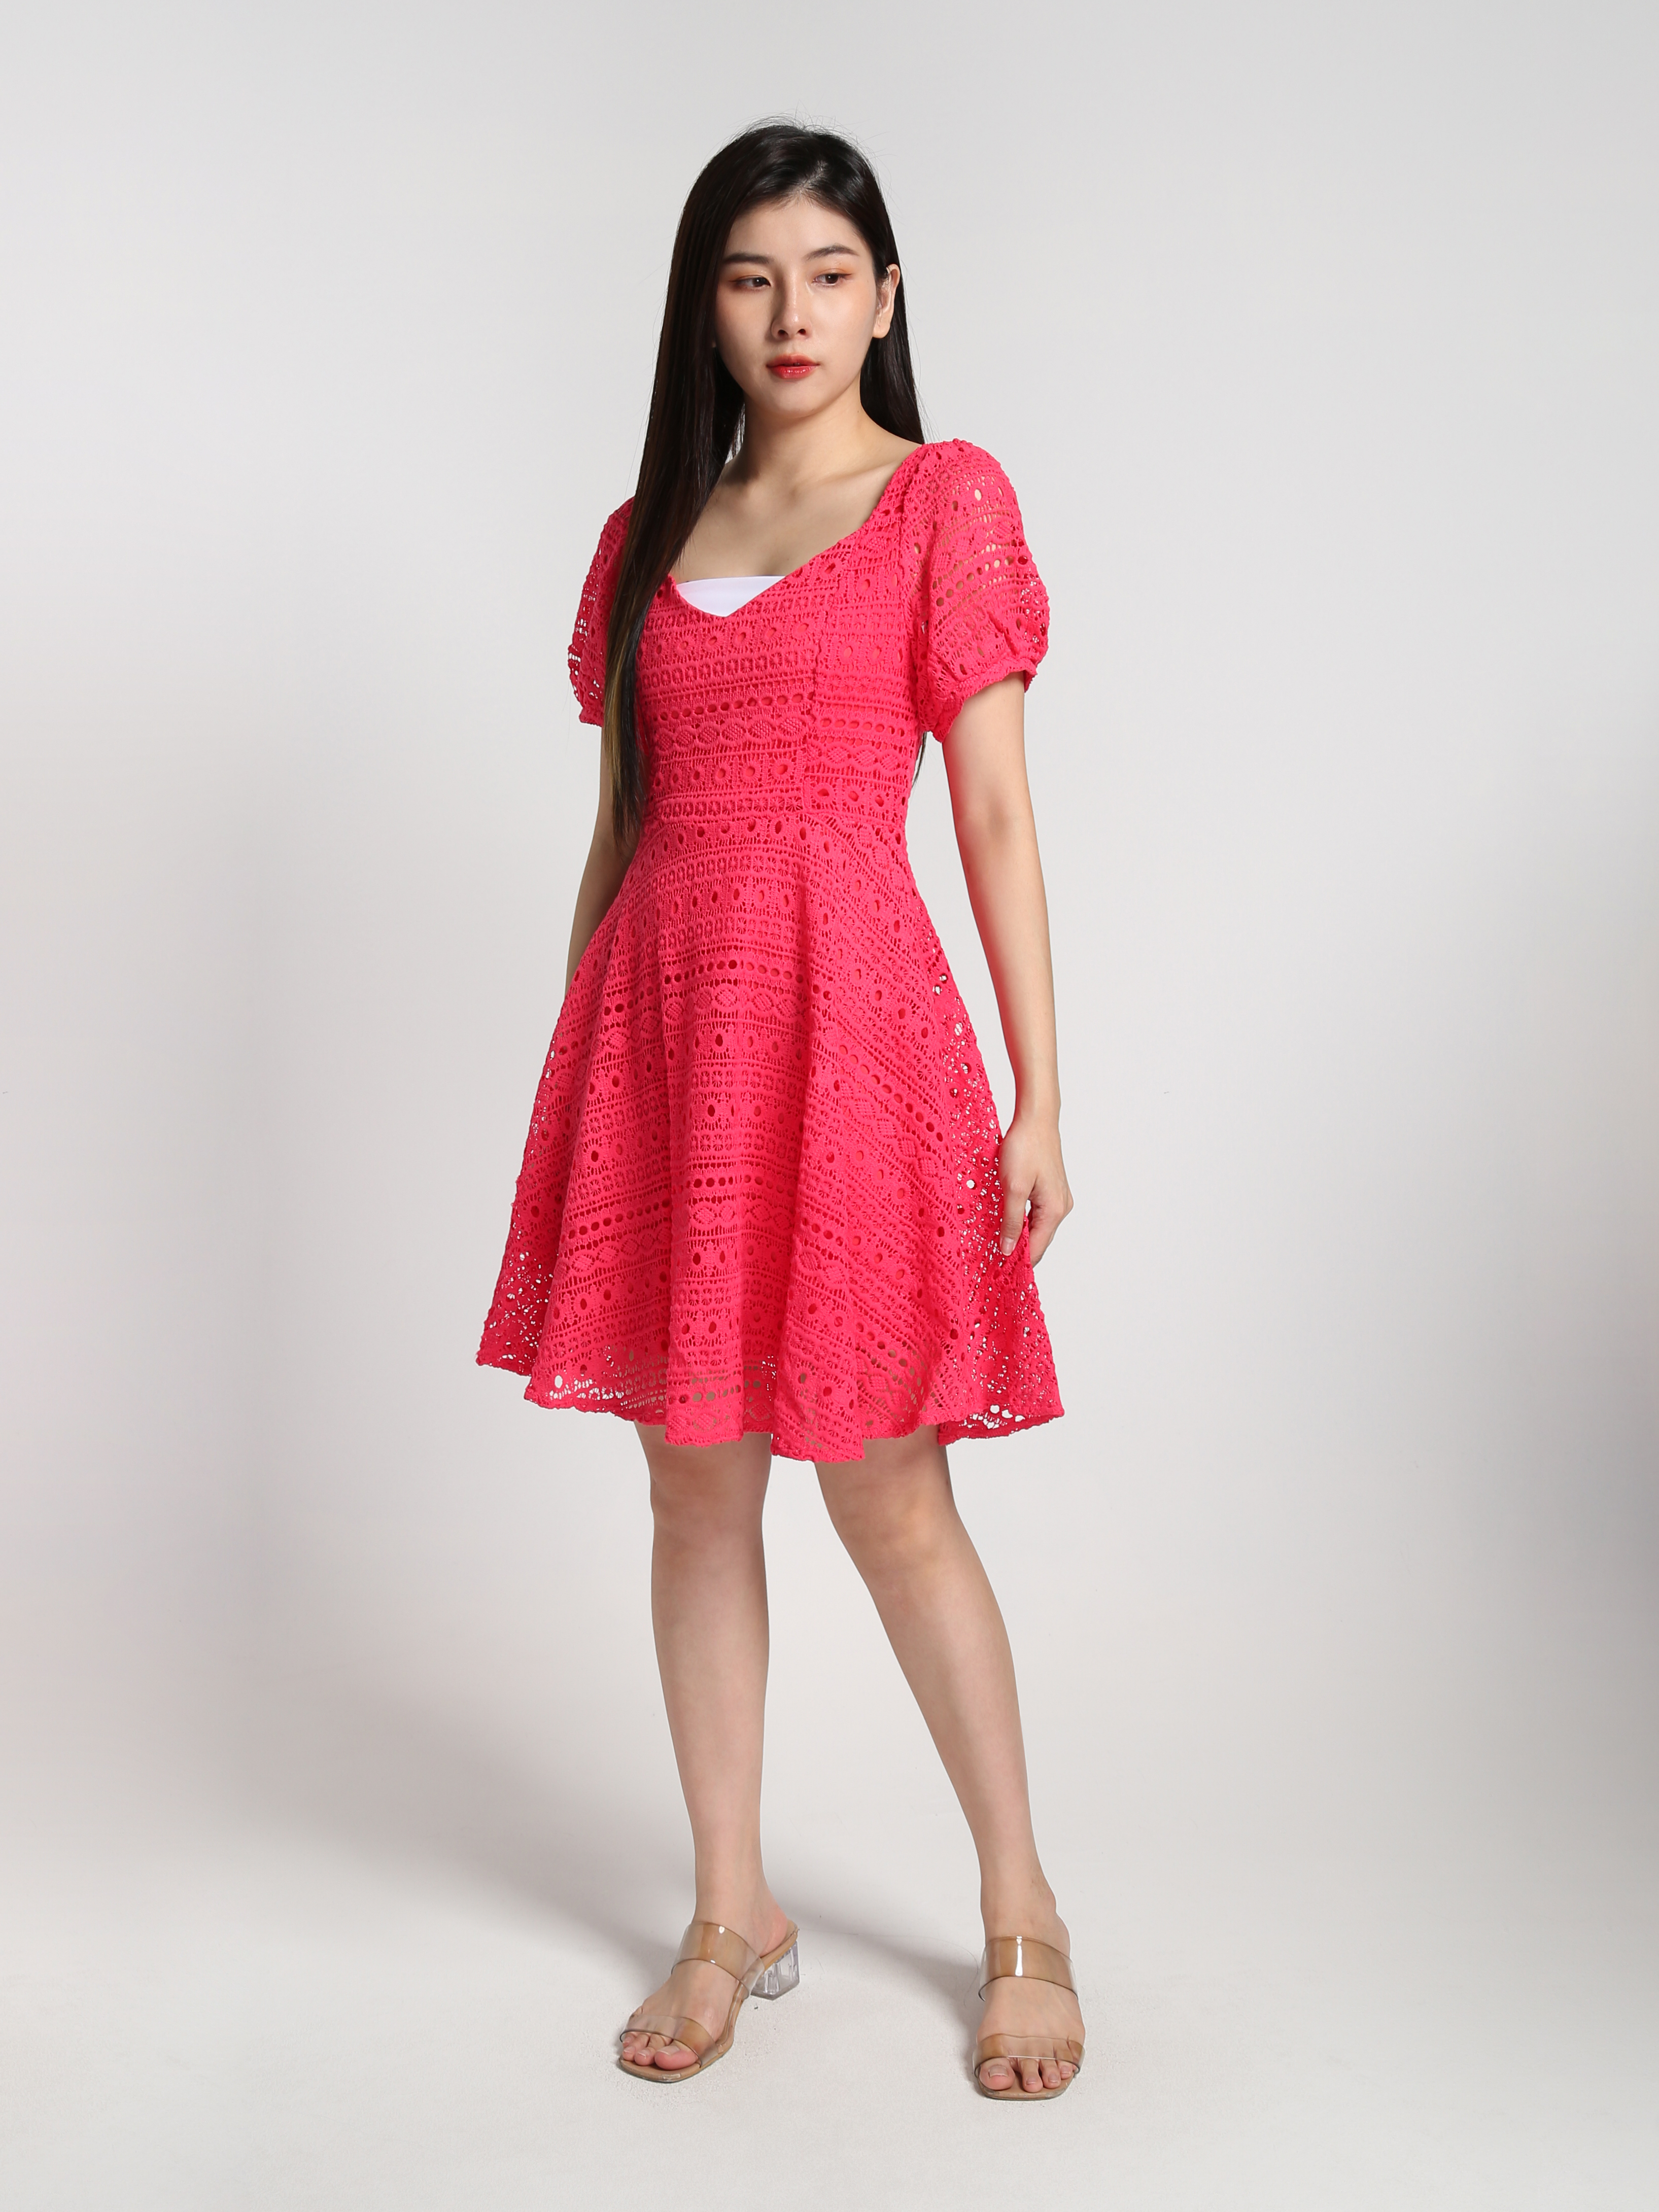 Lace Crochet Puff Short Sleeve Dress 22799